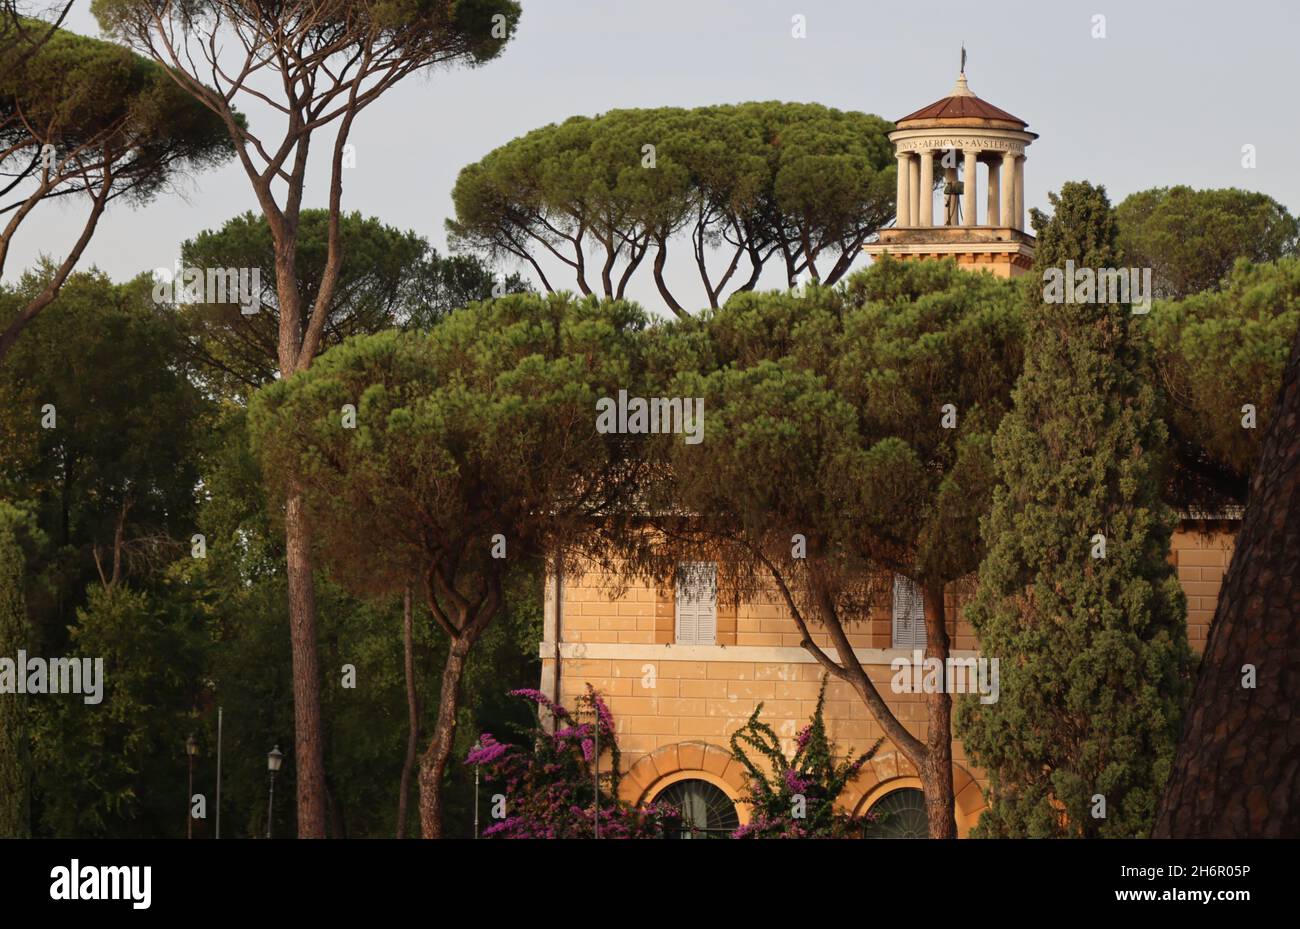 The Casino dell'Orologio in Villa Borghese, Rome, Italy Stock Photo - Alamy